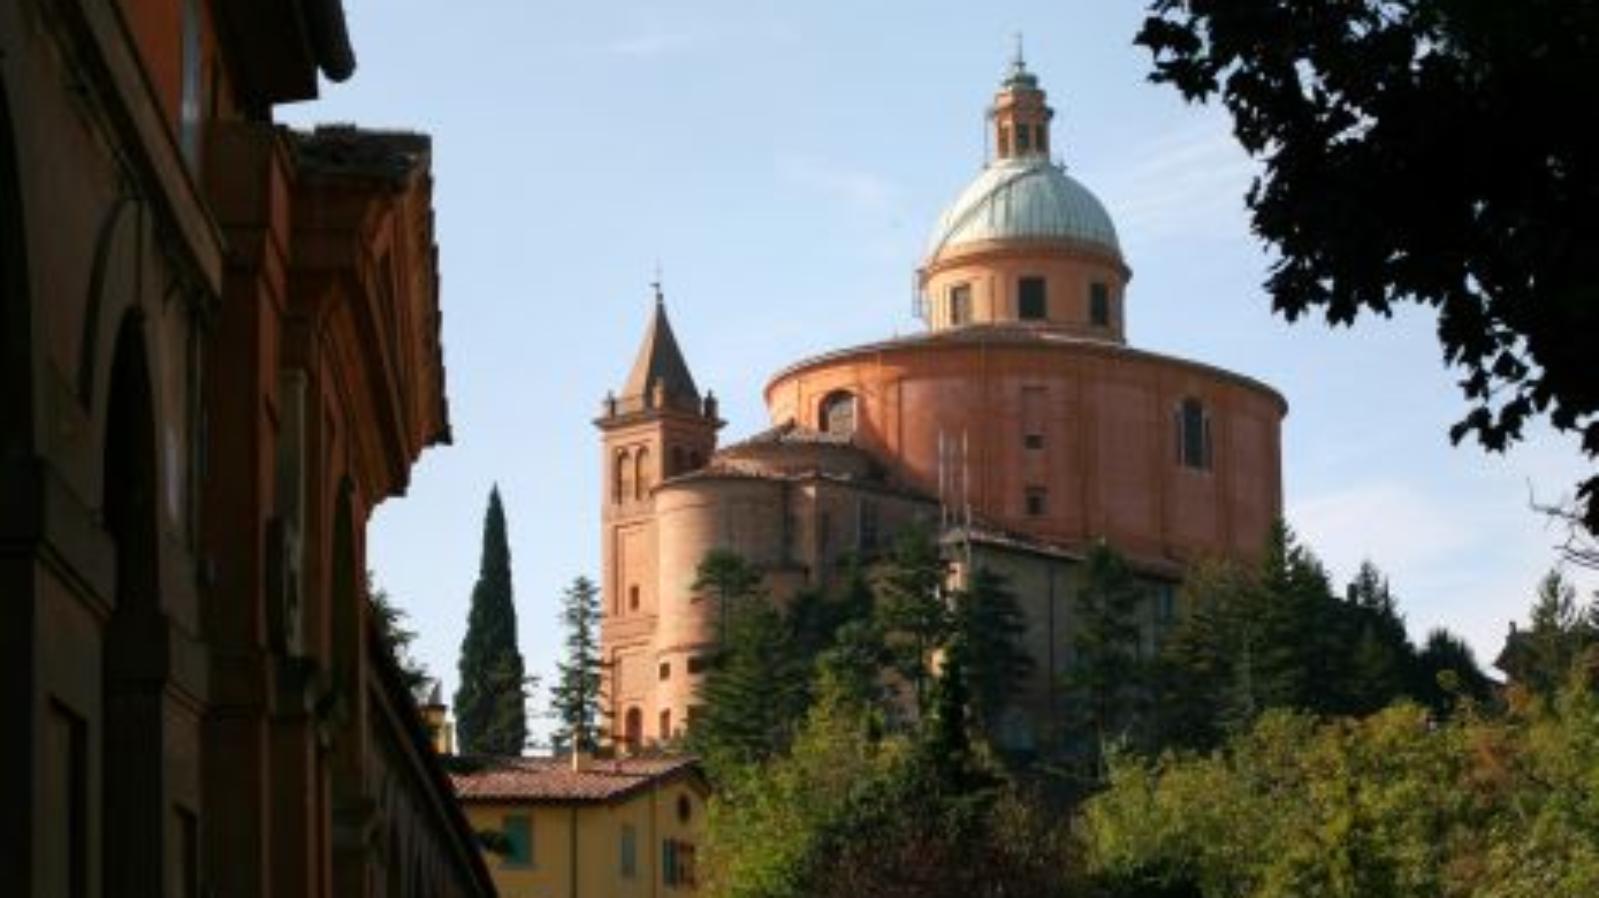 Santuario di San Luca, Bologna / Sanctuary of San Luca, Bologna